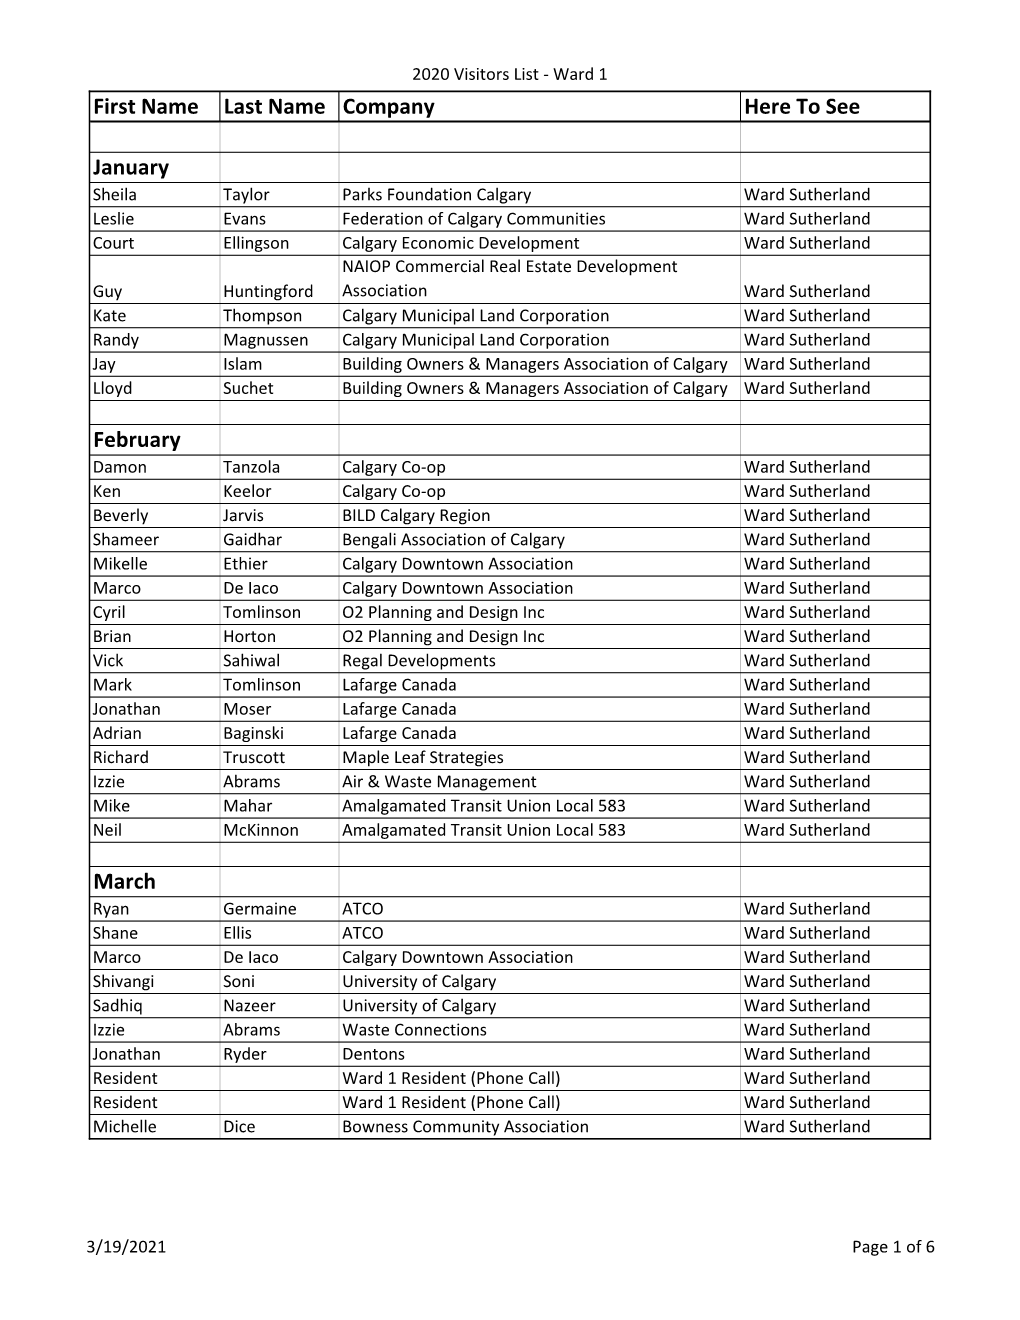 Ward 1 Councillor Visitors List 2020